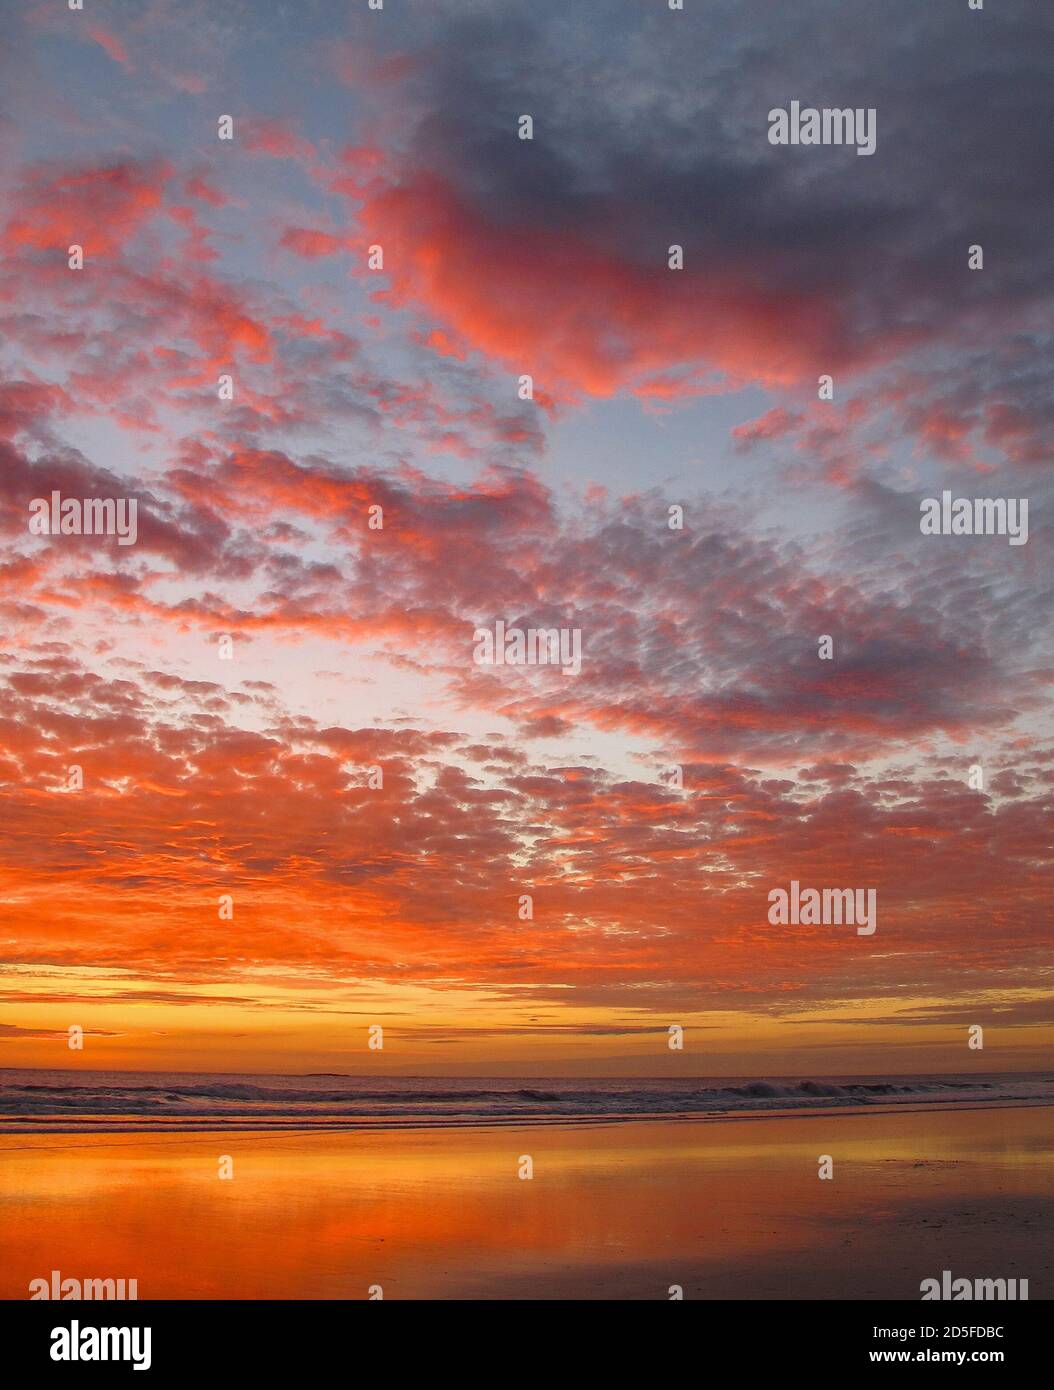 Coastal sunset on Costa Rican beach Stock Photo